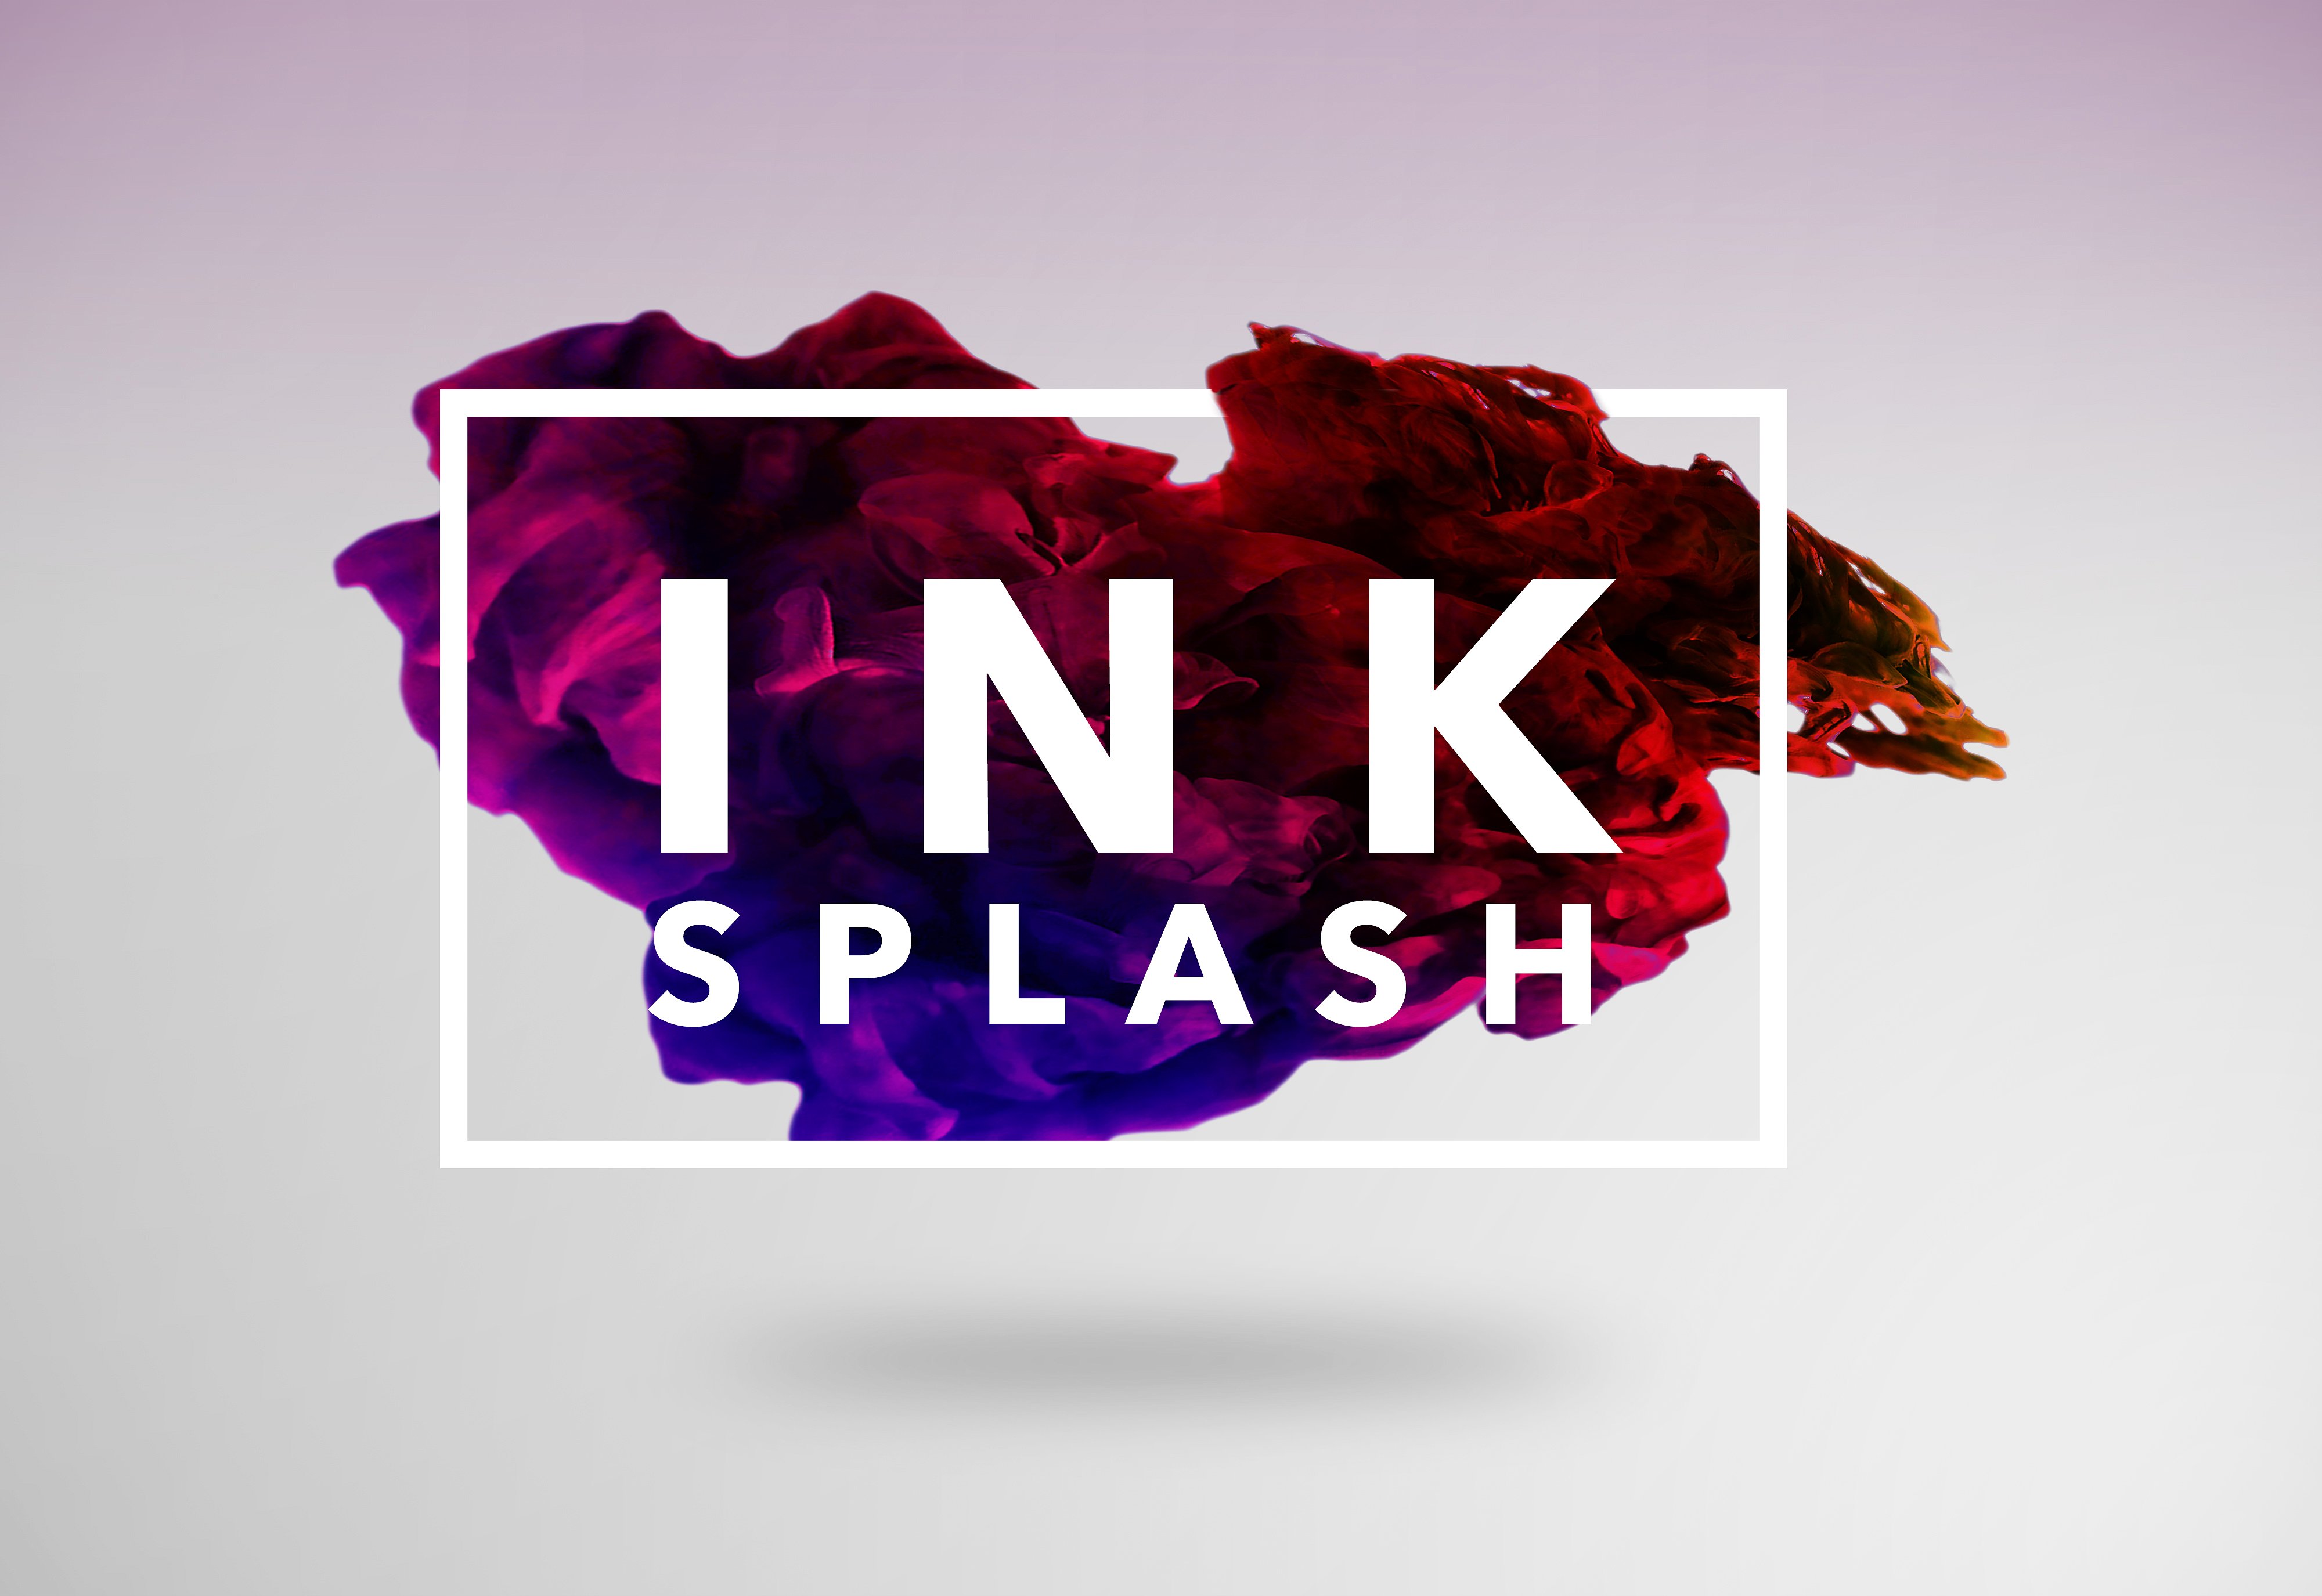 I N K Splash Bundle-漂亮的彩色墨水在水中的状态的PS笔刷下载[psd,png,jpg,abr]插图(12)